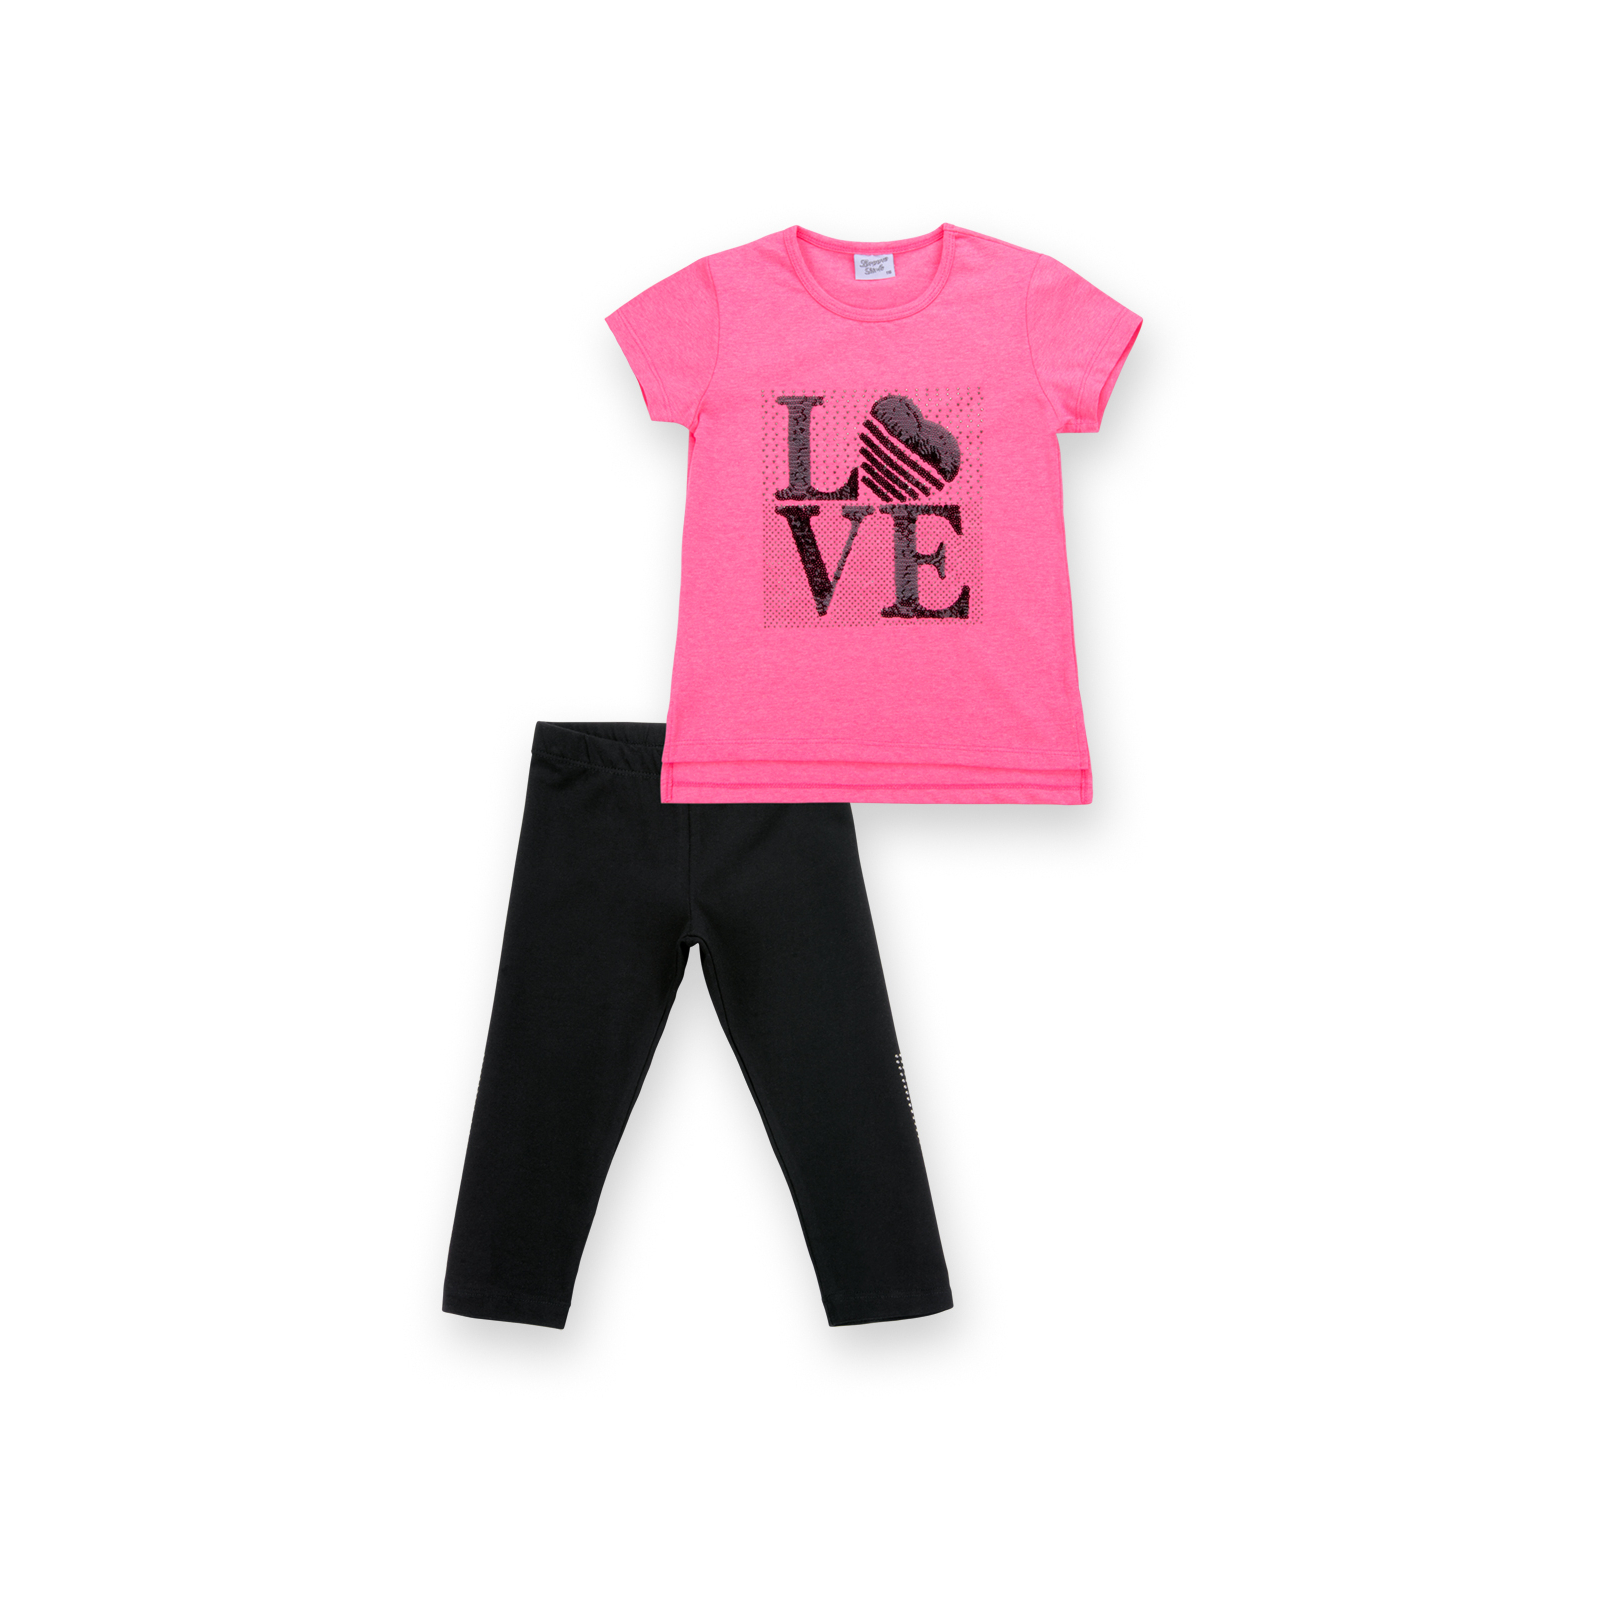 Набір дитячого одягу Breeze з написом "LOVE" із паєток (8307-140G-yellow)